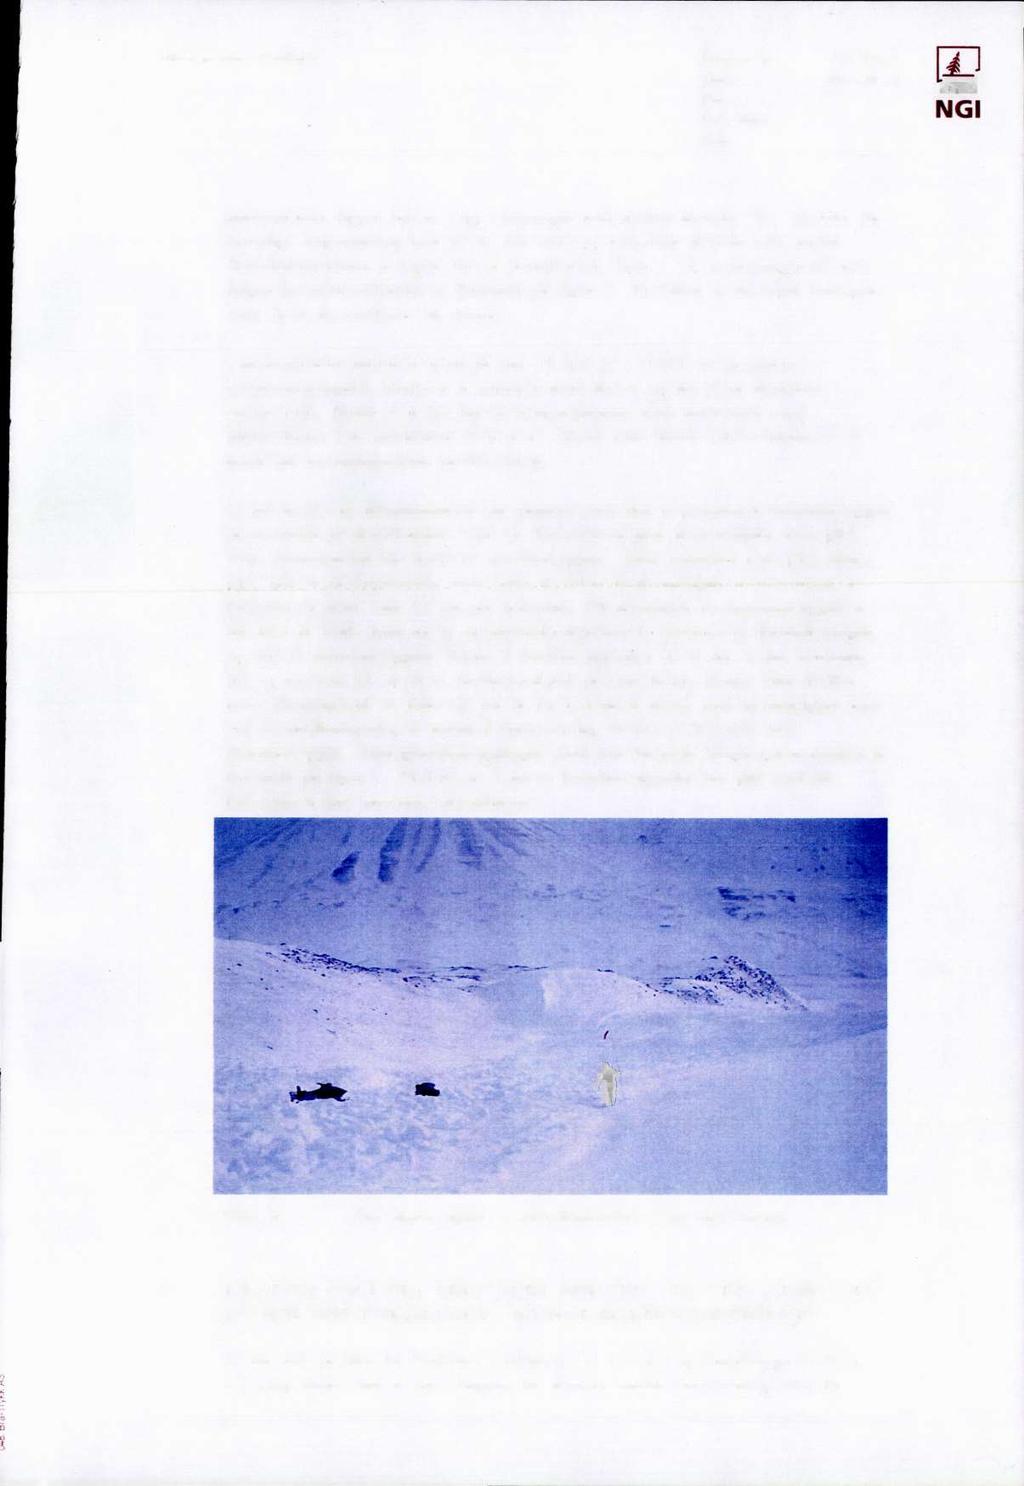 / Håbergnuten, Svalbard Rapport nr: 588100-21 I Dato: 2001-08-31 T R : ev Rev. dato: NGI Side: 5 løsnornrådet ligger det en rygg i terrenget som splitta skredet i to.